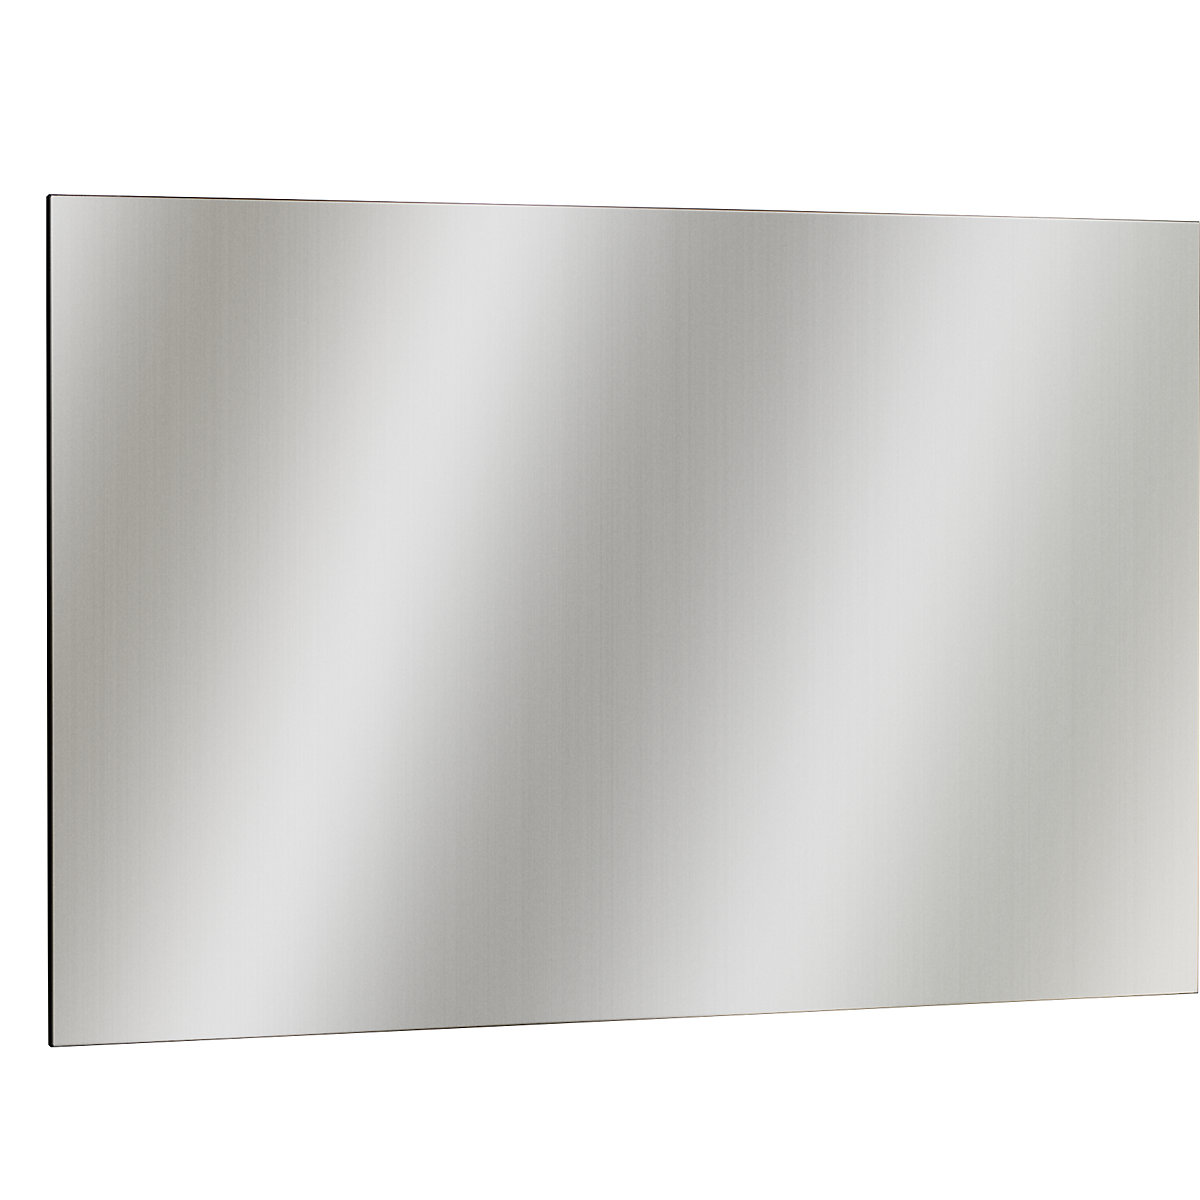 EUROKRAFTbasic – Ścianka magnetyczna ze stali szlachetnej, polerowana na matowo, szer. x wys. 1465 x 965 mm